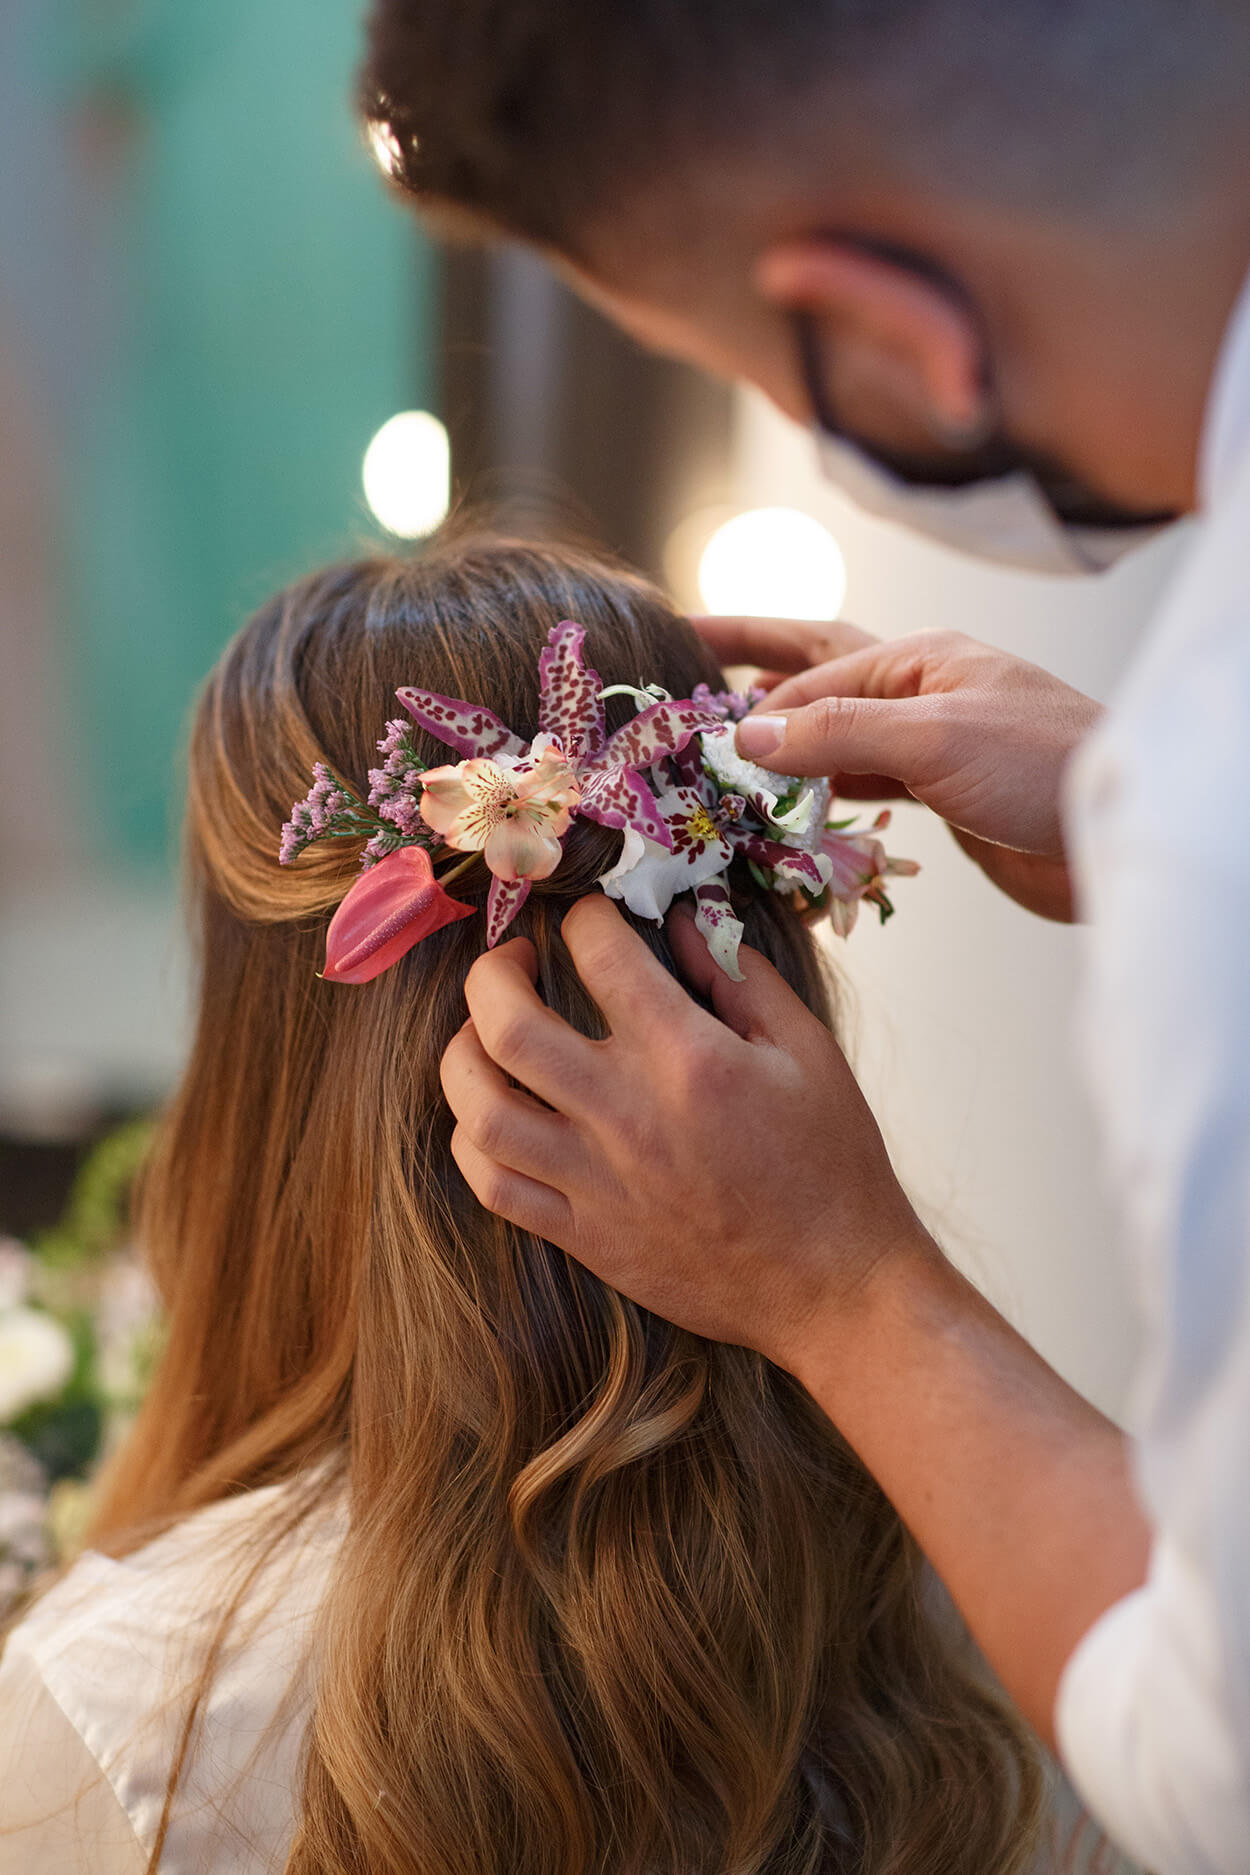 Homem colocando flor no cabelo de mulher